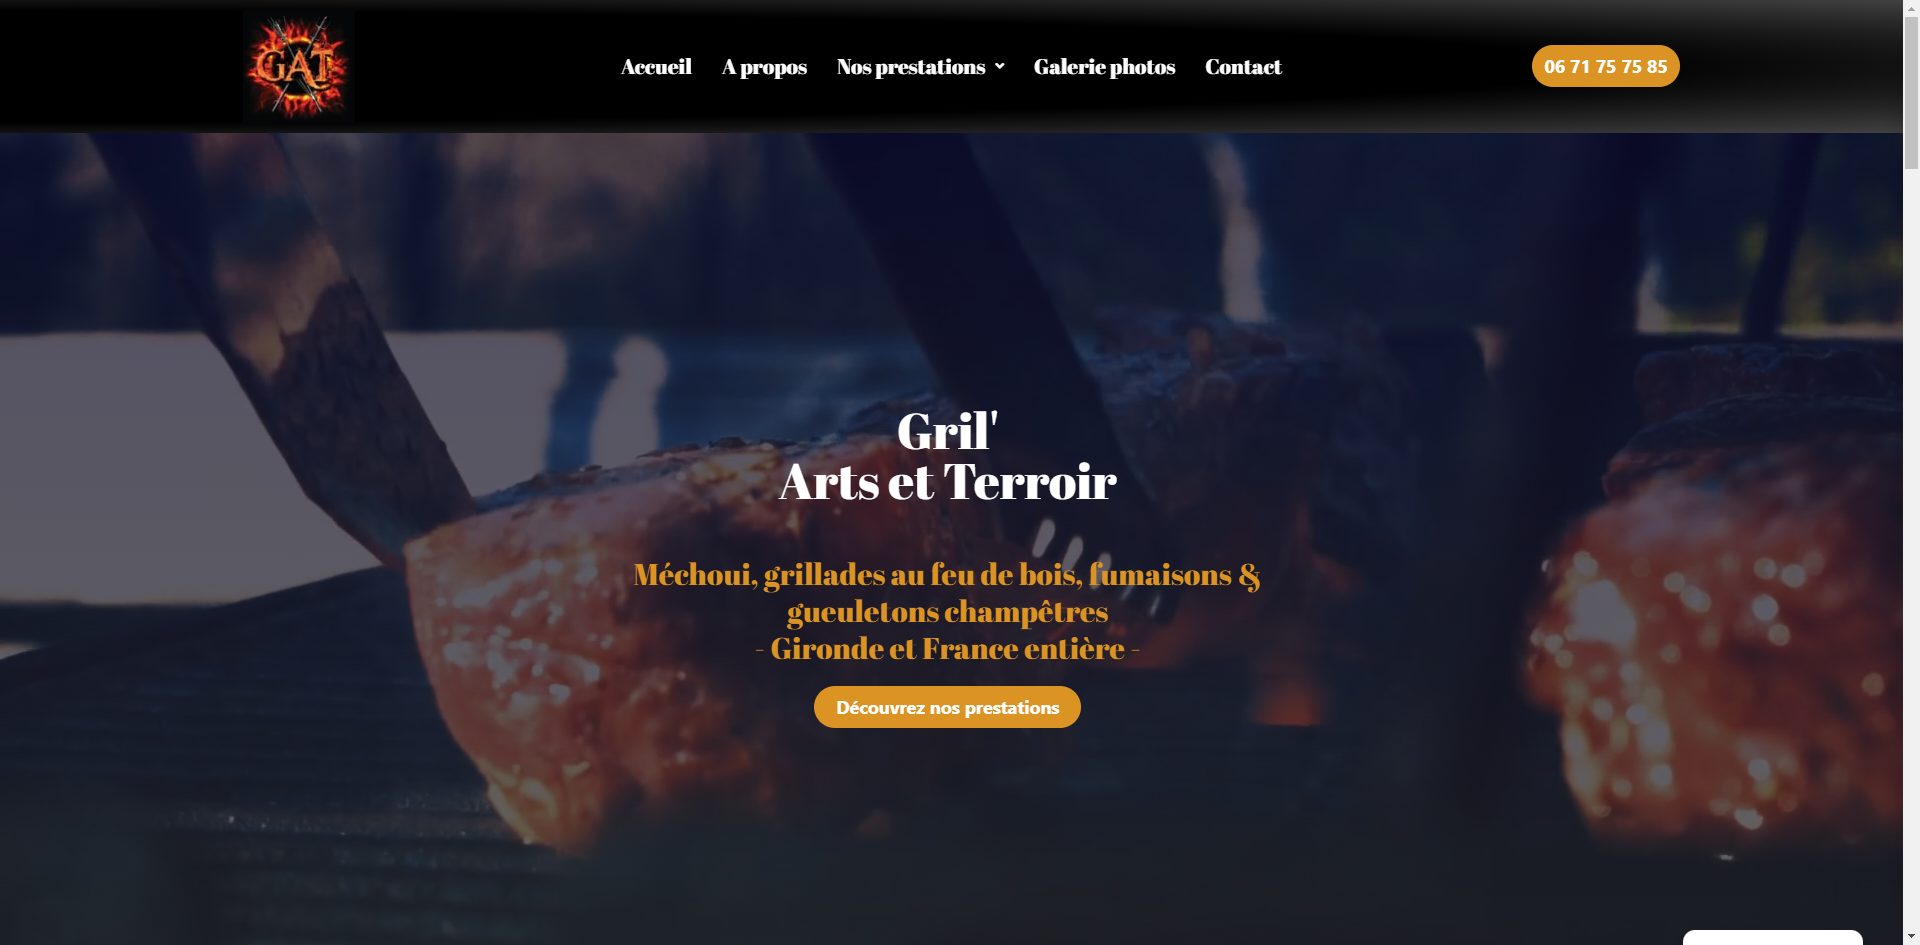 Page d'accueil du site internet vitrine réalisé pour Gril' Arts et terroir.